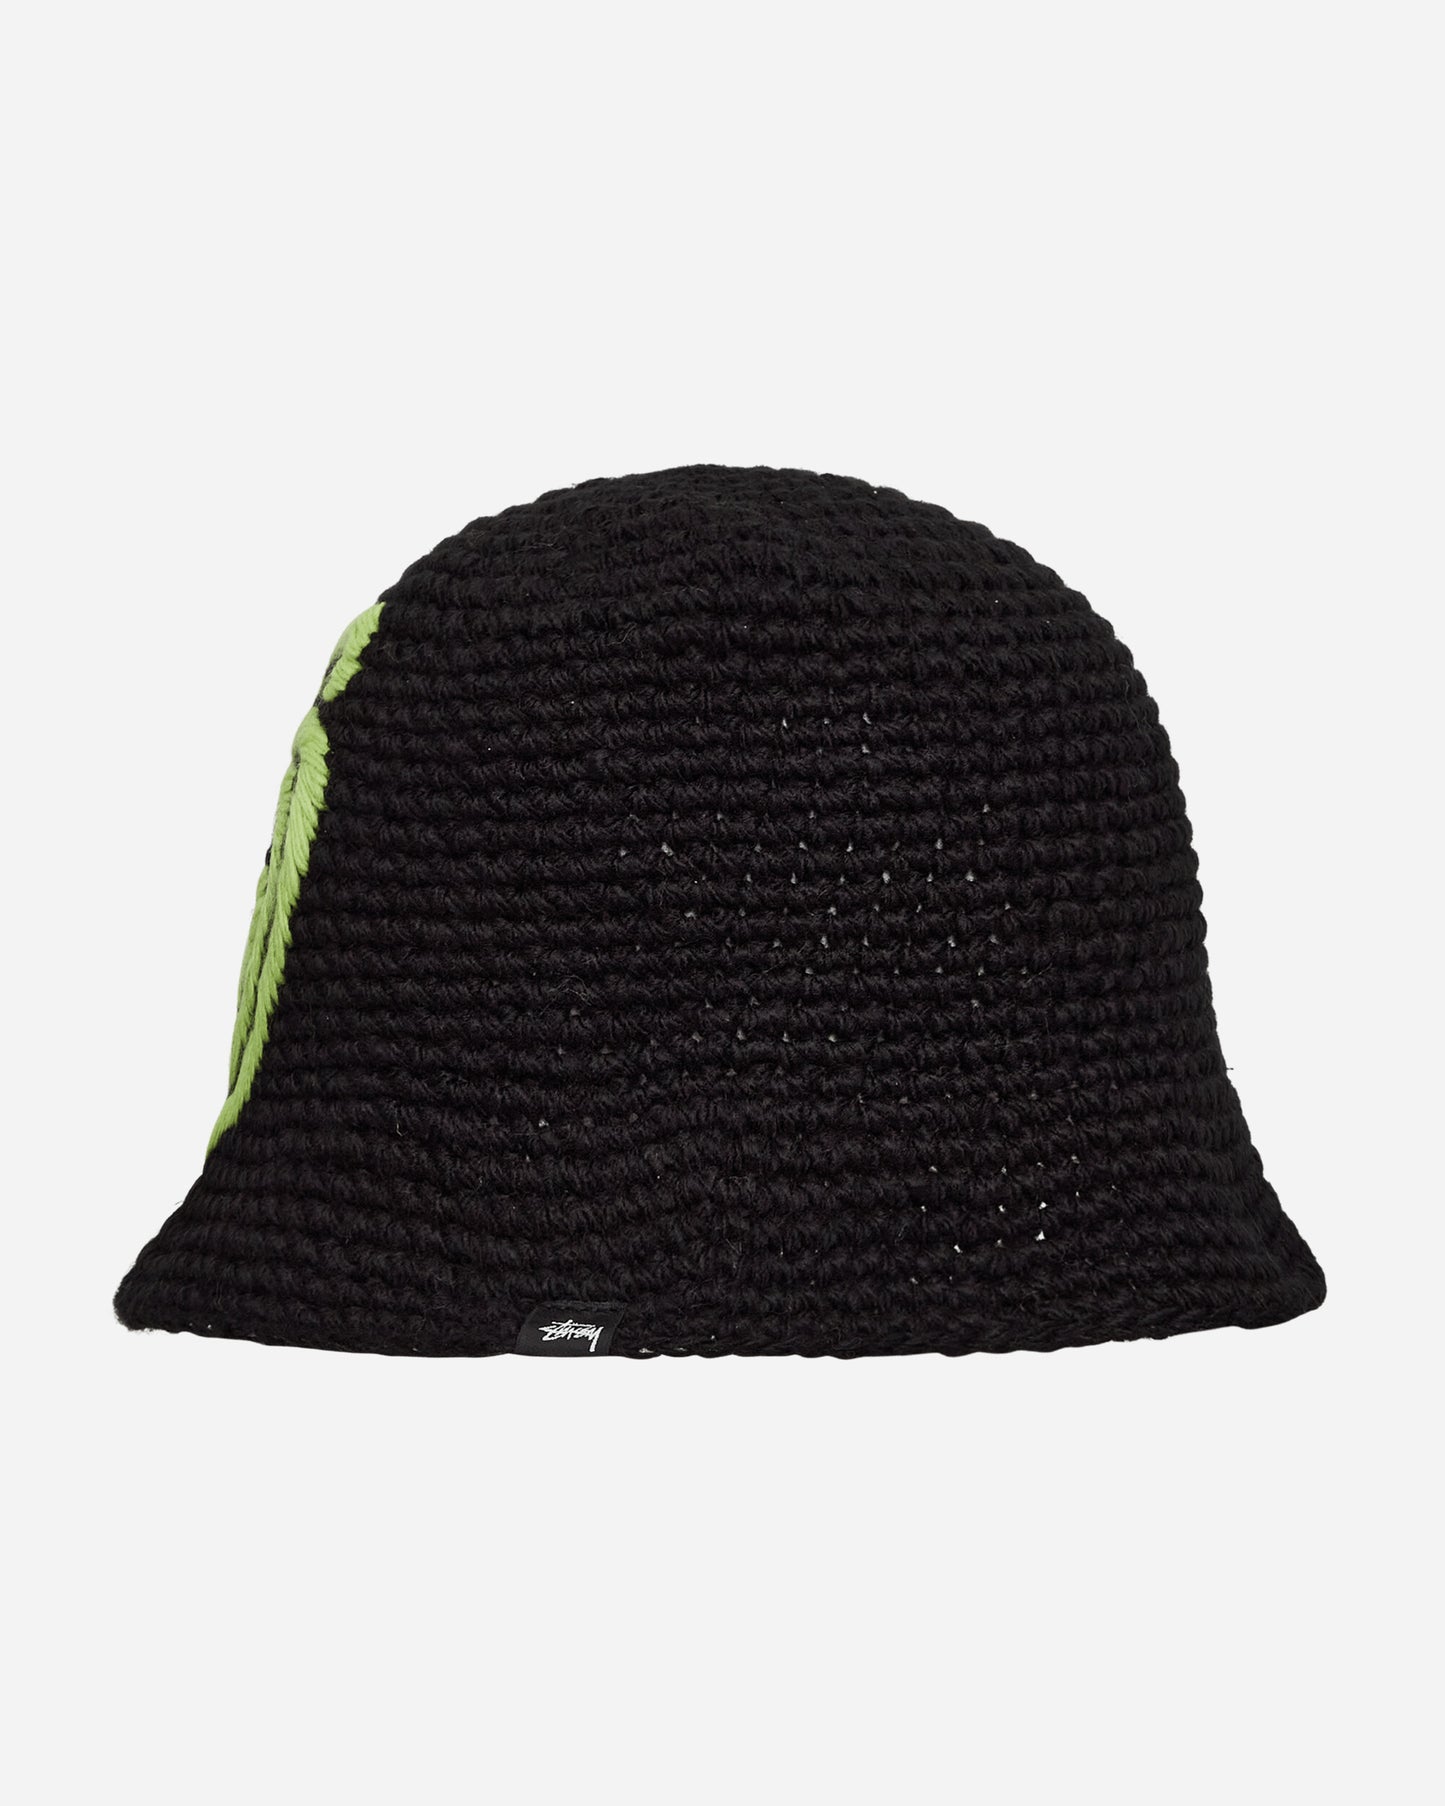 Stüssy Swirly S Knit Bucket Hat Black Hats Bucket 1321208 0001